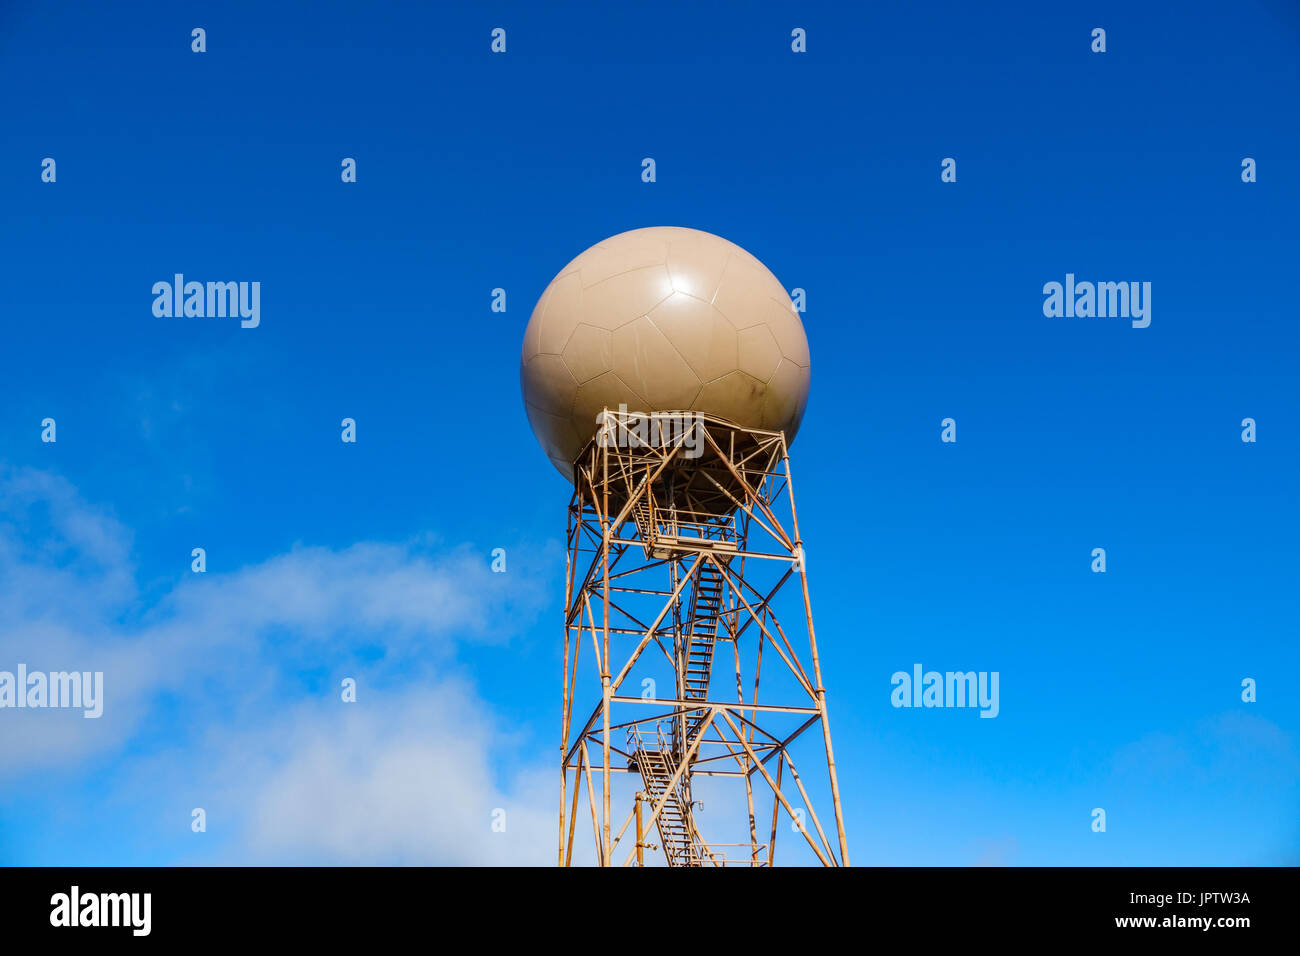 Ballon-Radar über blauen Himmel Stockfoto